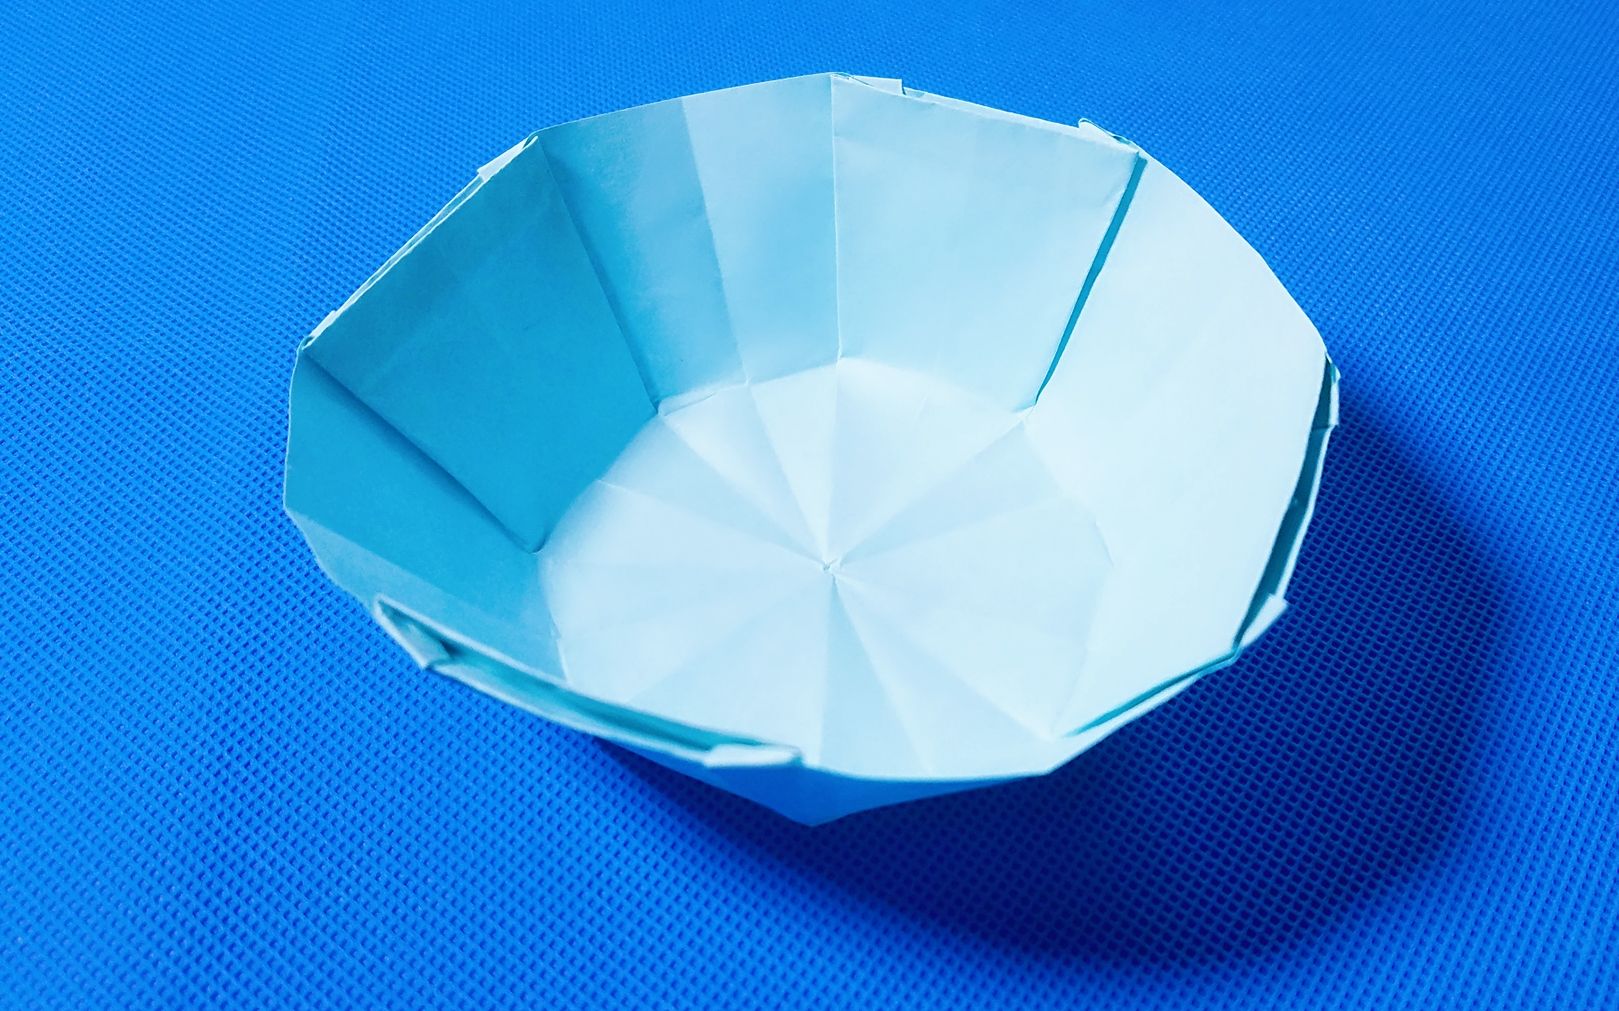 【折纸教程】折纸王子:小碗折纸大全教程讲解详细一看